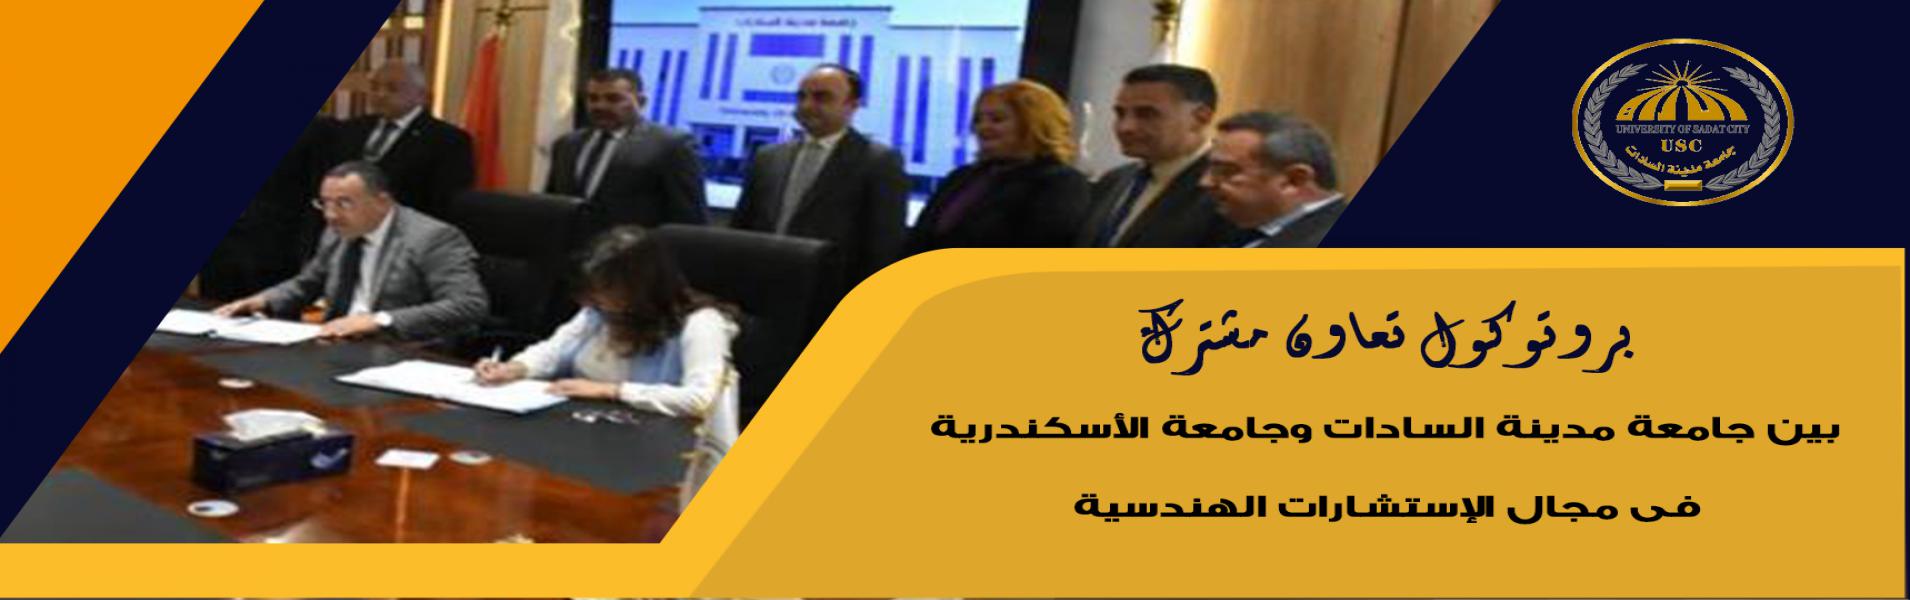 توقيع بروتوكول تعاون مشترك بين جامعة مدينة السادات وجامعة الأسكندرية فى مجال الإستشارات الهندسية